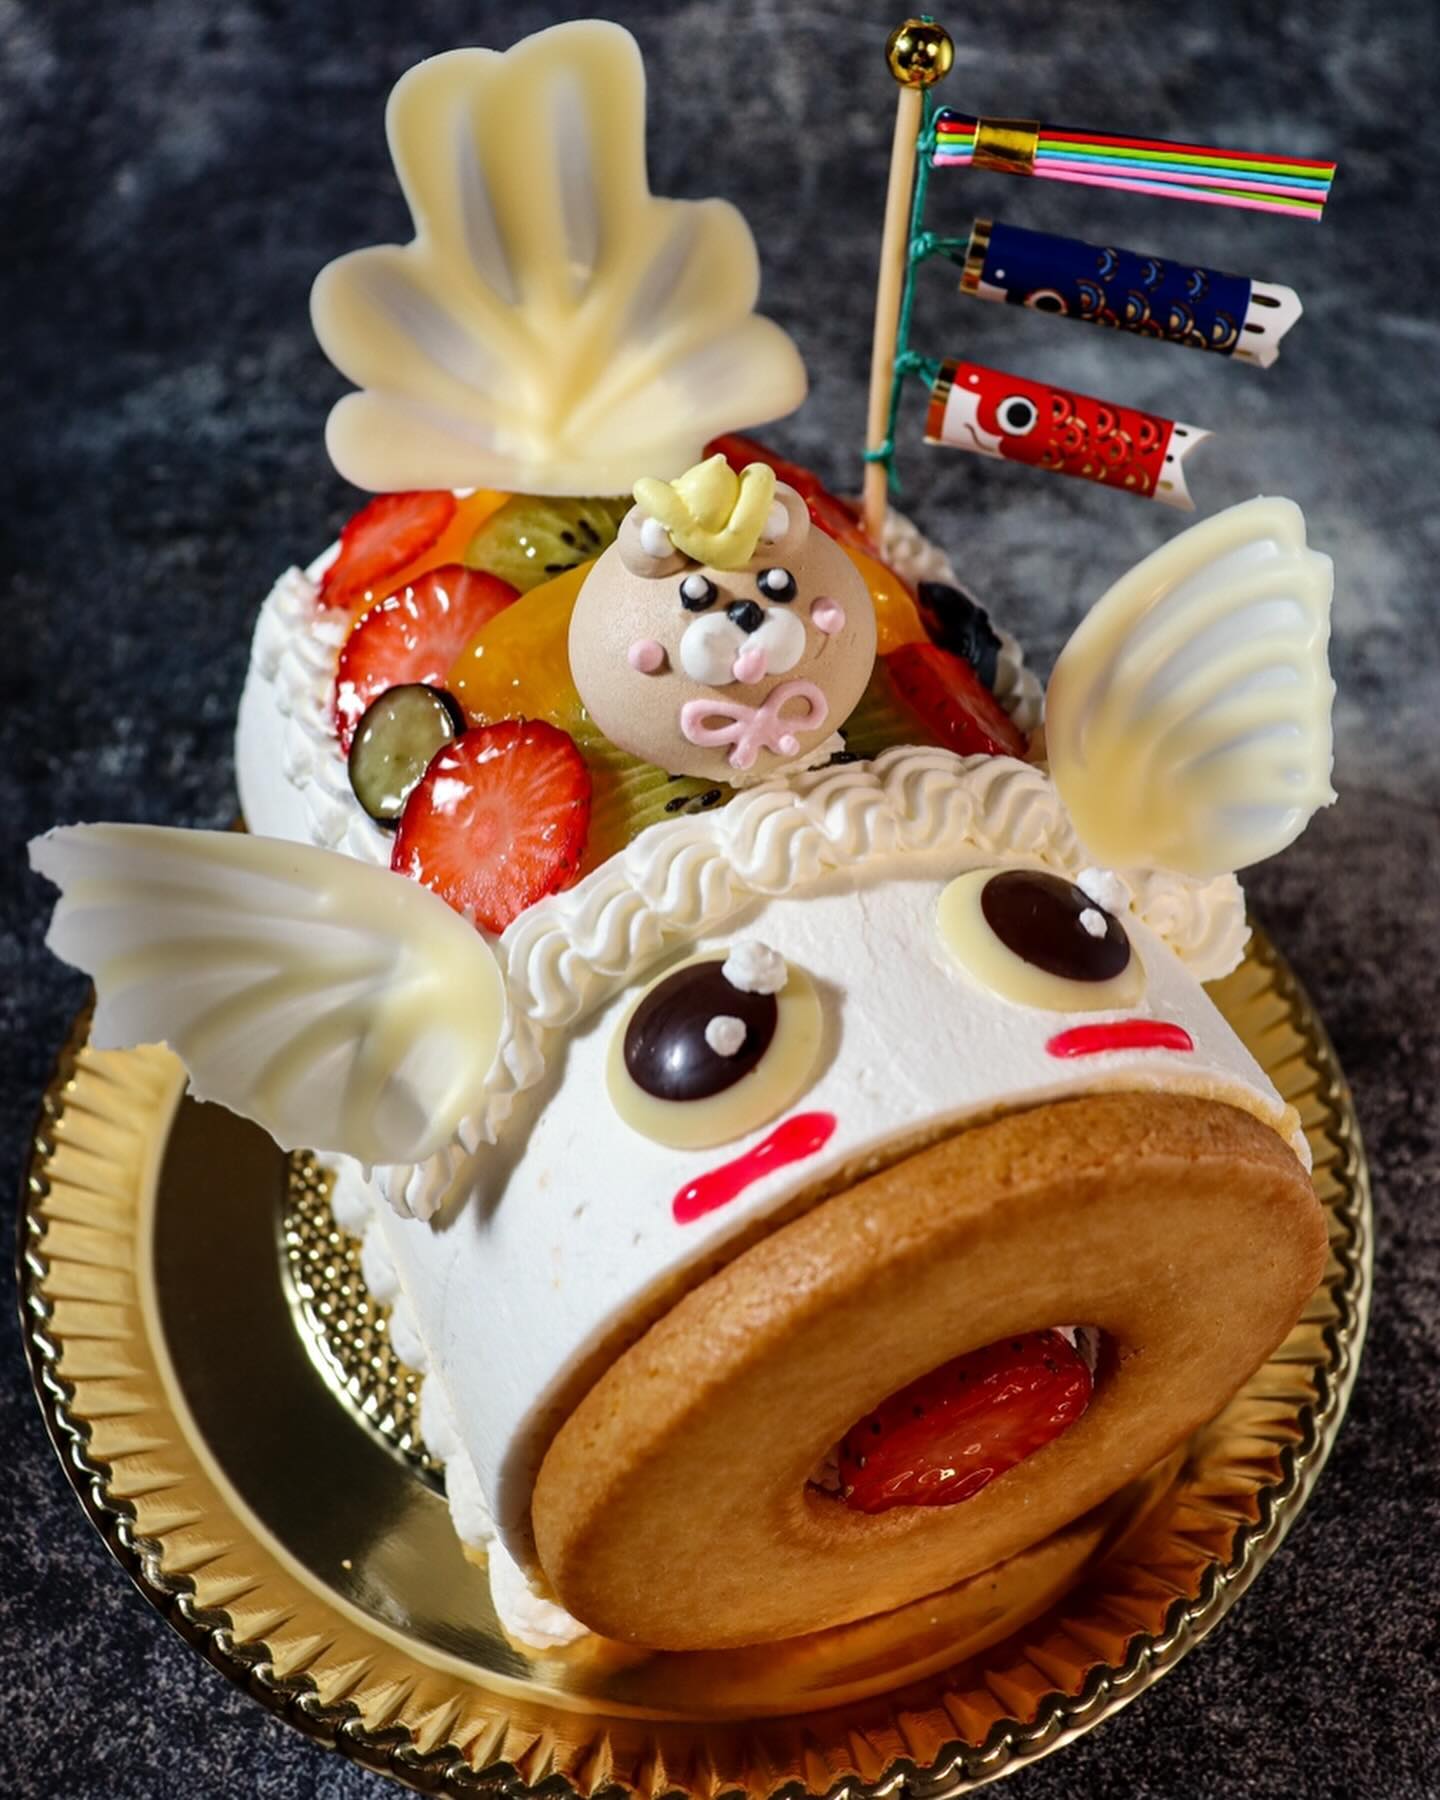 こどもの日限定ケーキのご紹介です

〜　こいのぼりロール　〜
　　　　　　　　12㎝　　¥2600 税込
ふわふわのロール生地で苺・キウイ・甘夏を巻き込み
表面にも黄桃・キウイ・苺・ブルーベリーで彩りよく飾った
鯉のぼり型ロールケーキです。
愛らしい表情のこいのぼりの上には、メレンゲで作った
兜クマさんをのせました。

数に限りがございますので、
ぜひご予約をおすすめしております
よろしくお願い致します。
皆様のお越しをスタッフ一同心より
お待ちしております

ル・クレールのクレープ屋さんカフェ・ド・バルーンで
焼き立てクレープをご用意しております。
是非よろしくおねがい致します